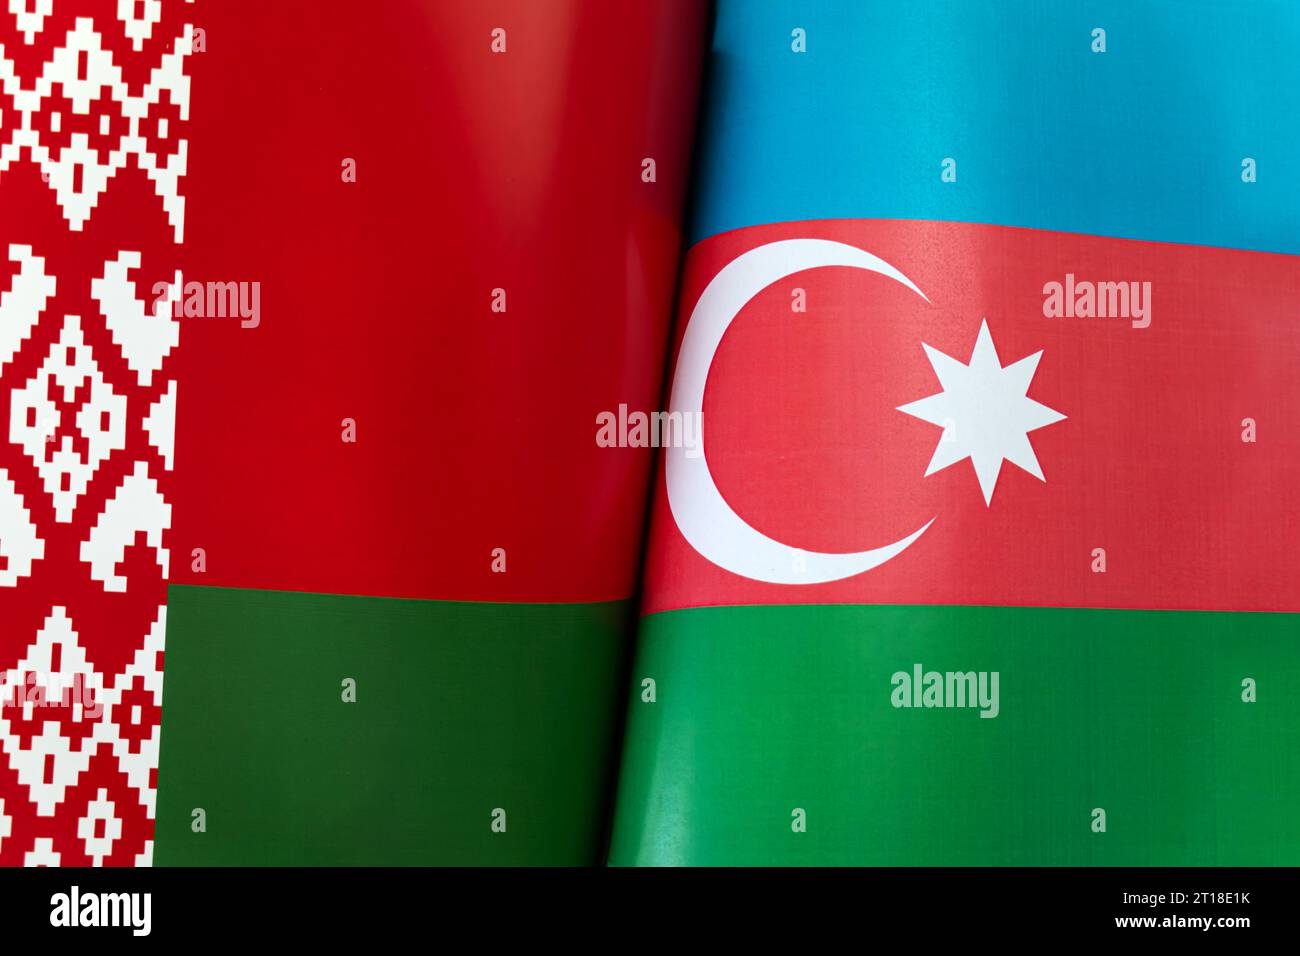 Hintergrund der Flaggen von Belarus, aserbaidschan. Das Konzept der Interaktion oder Gegenmaßnahmen zwischen den beiden Ländern. Internationale Beziehungen. politi Stockfoto